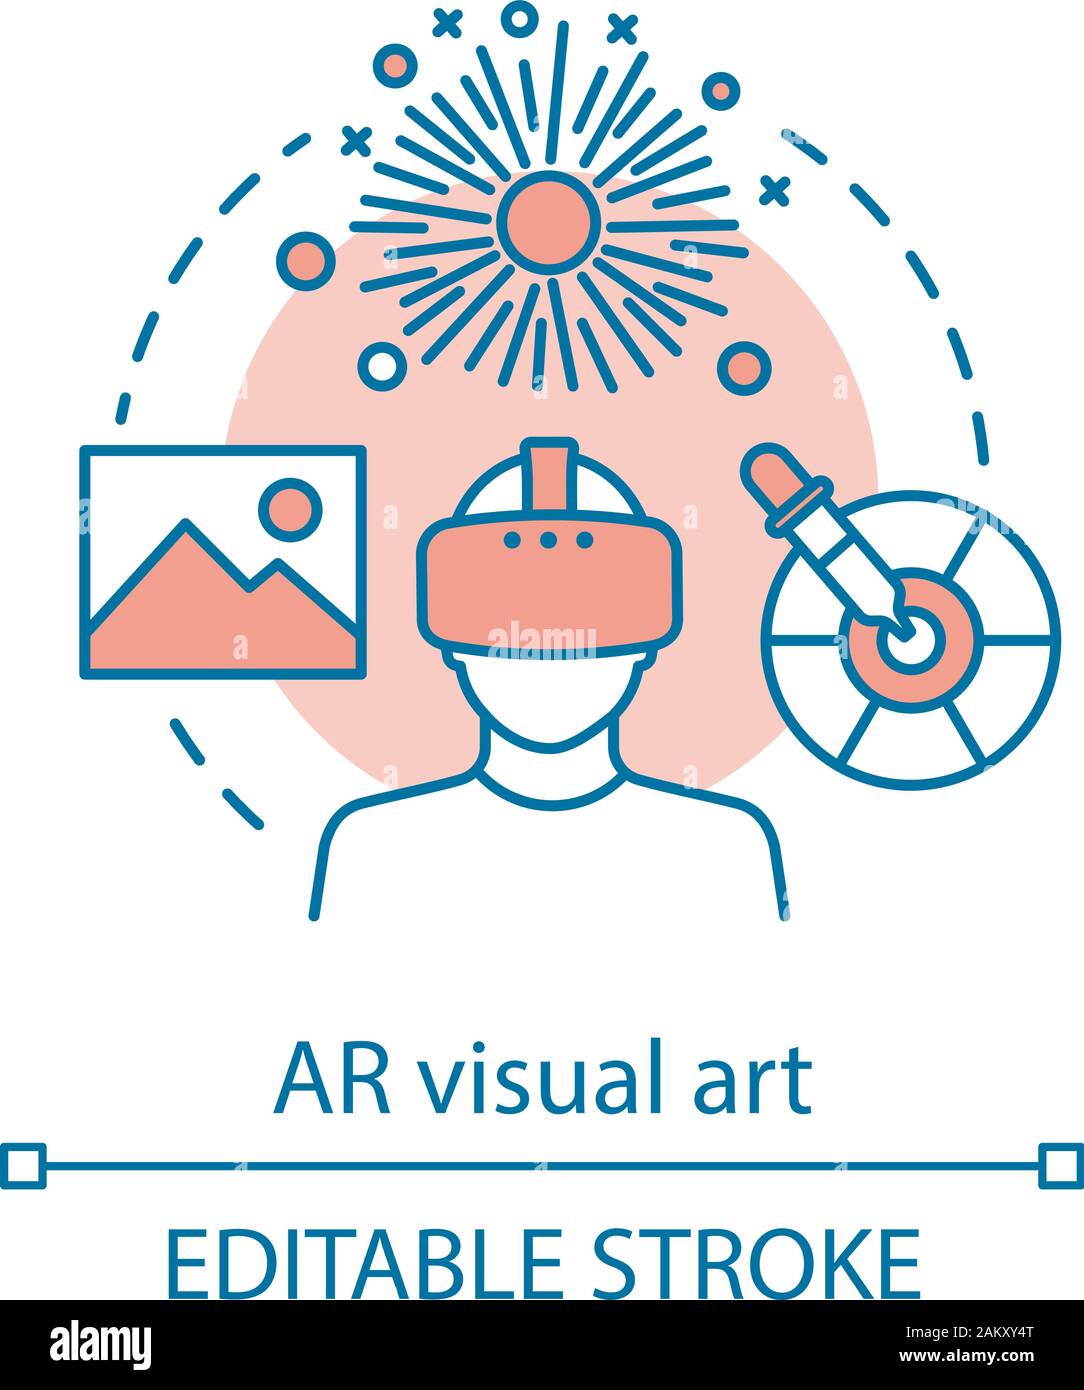 AR L'art visuel concept icône. Projet interactif artistique. Outils numériques pour l'oeuvre. L'application de la réalité virtuelle et augmentée idée fine ligne d'icônes. Vect Illustration de Vecteur